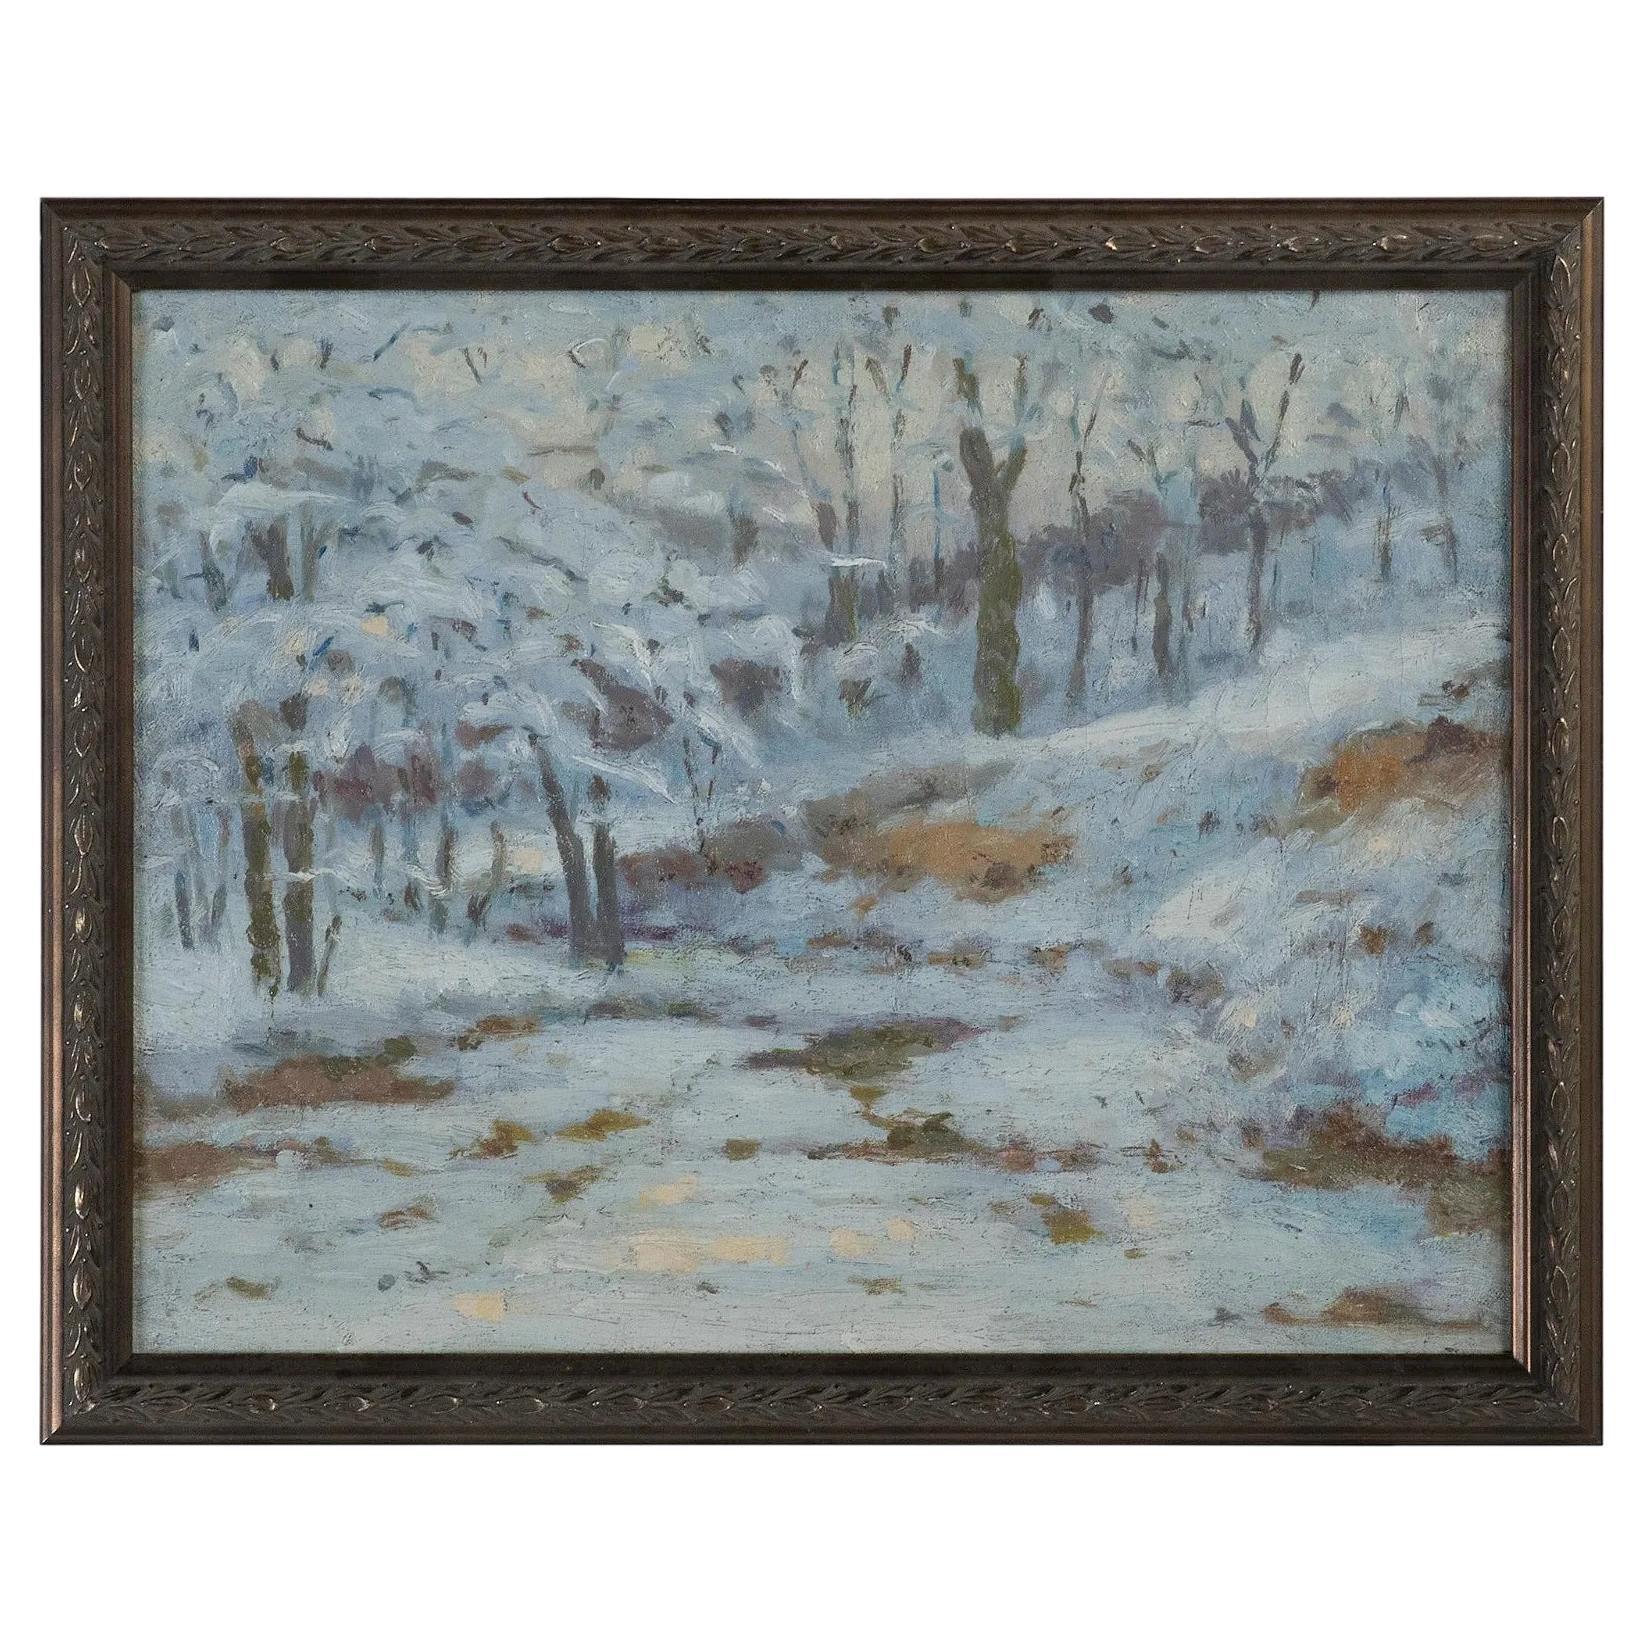 Impressionistisches Winterlandschaftsgemälde von Charles Meurer aus dem frühen 20. Jahrhundert